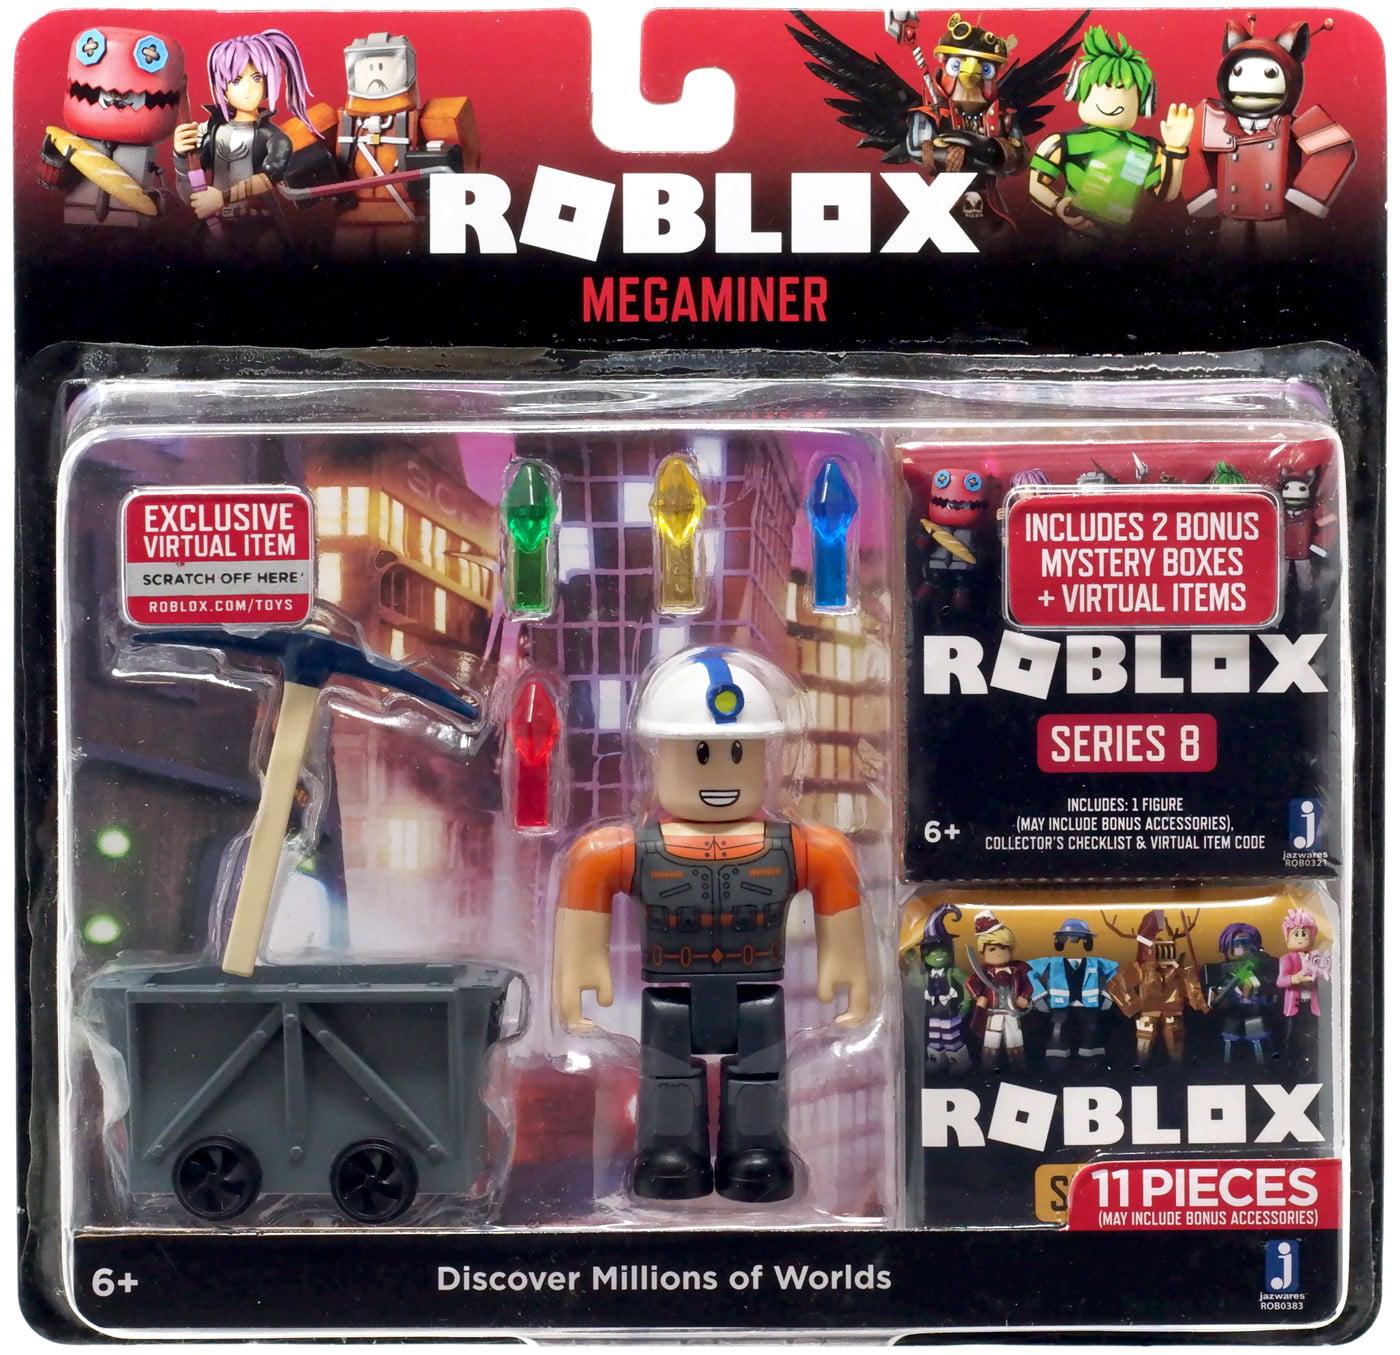 Roblox Megaminer Action Figure Includes 2 Mystery Packs Walmart Com Walmart Com - roblox jazwares com collectors guide